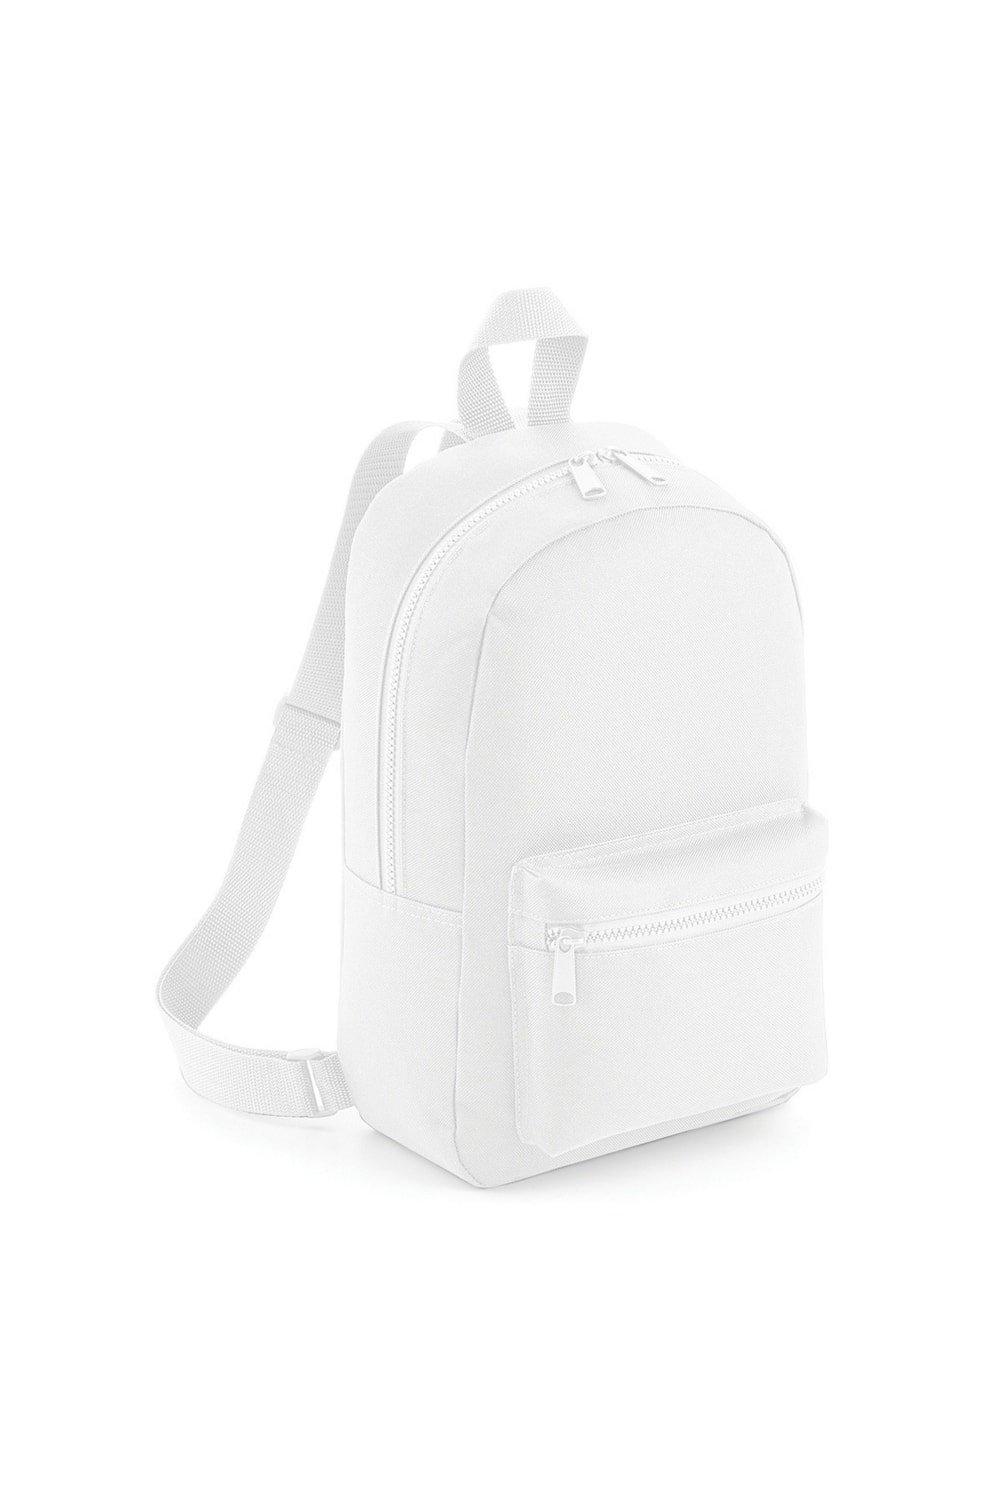 Мини-рюкзак/сумка Essential Essential Bagbase, белый